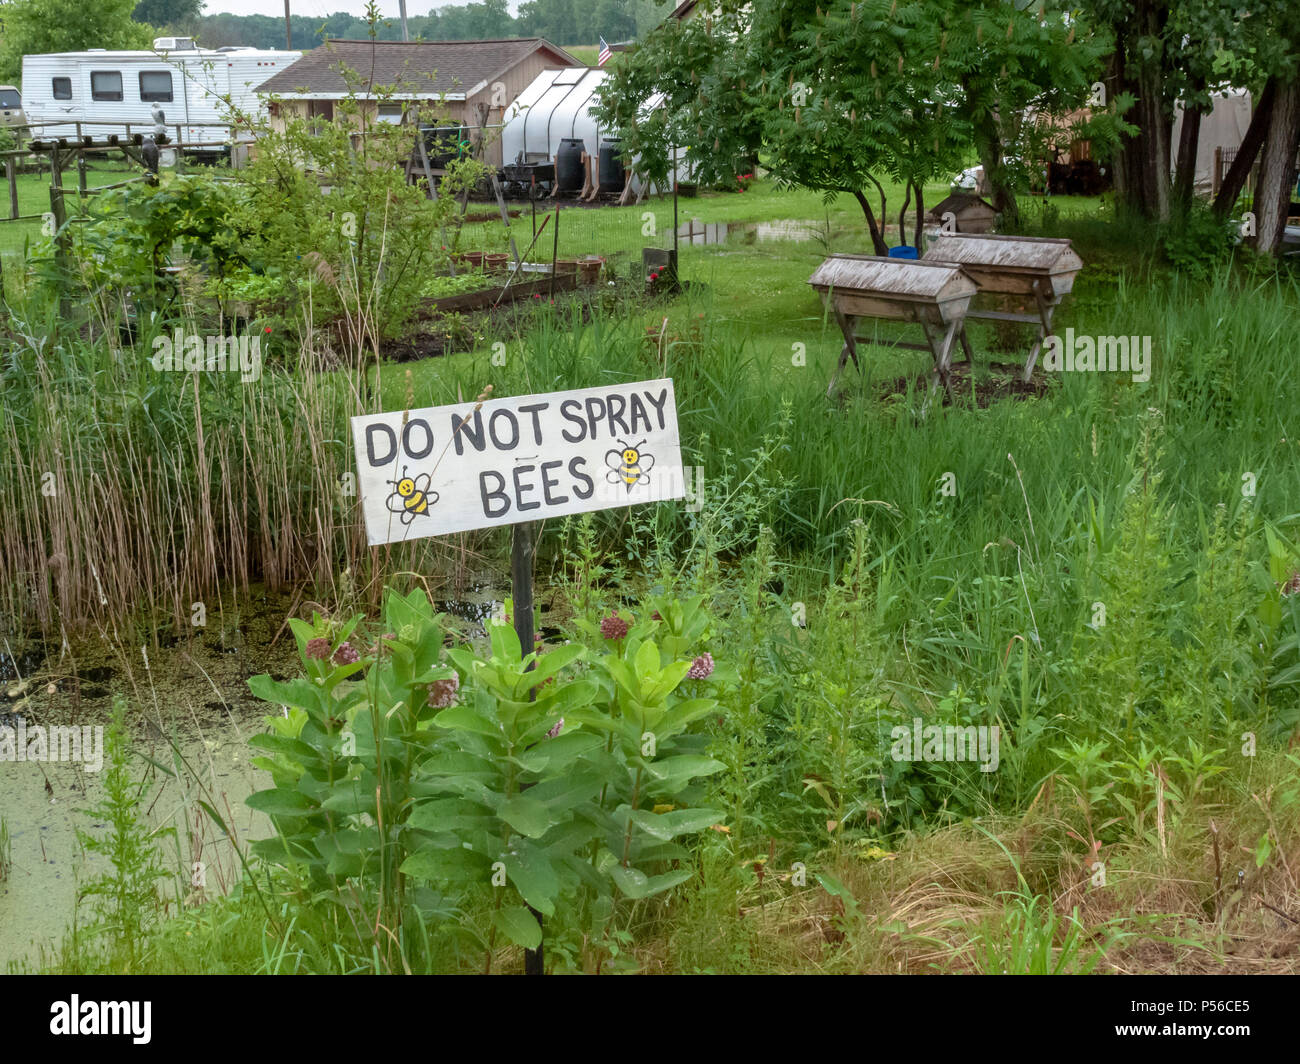 Harsens Île, Michigan - un signe composé de travailleurs demande d'éviter de vaporiser des produits chimiques sur la route afin de protéger les abeilles. Banque D'Images